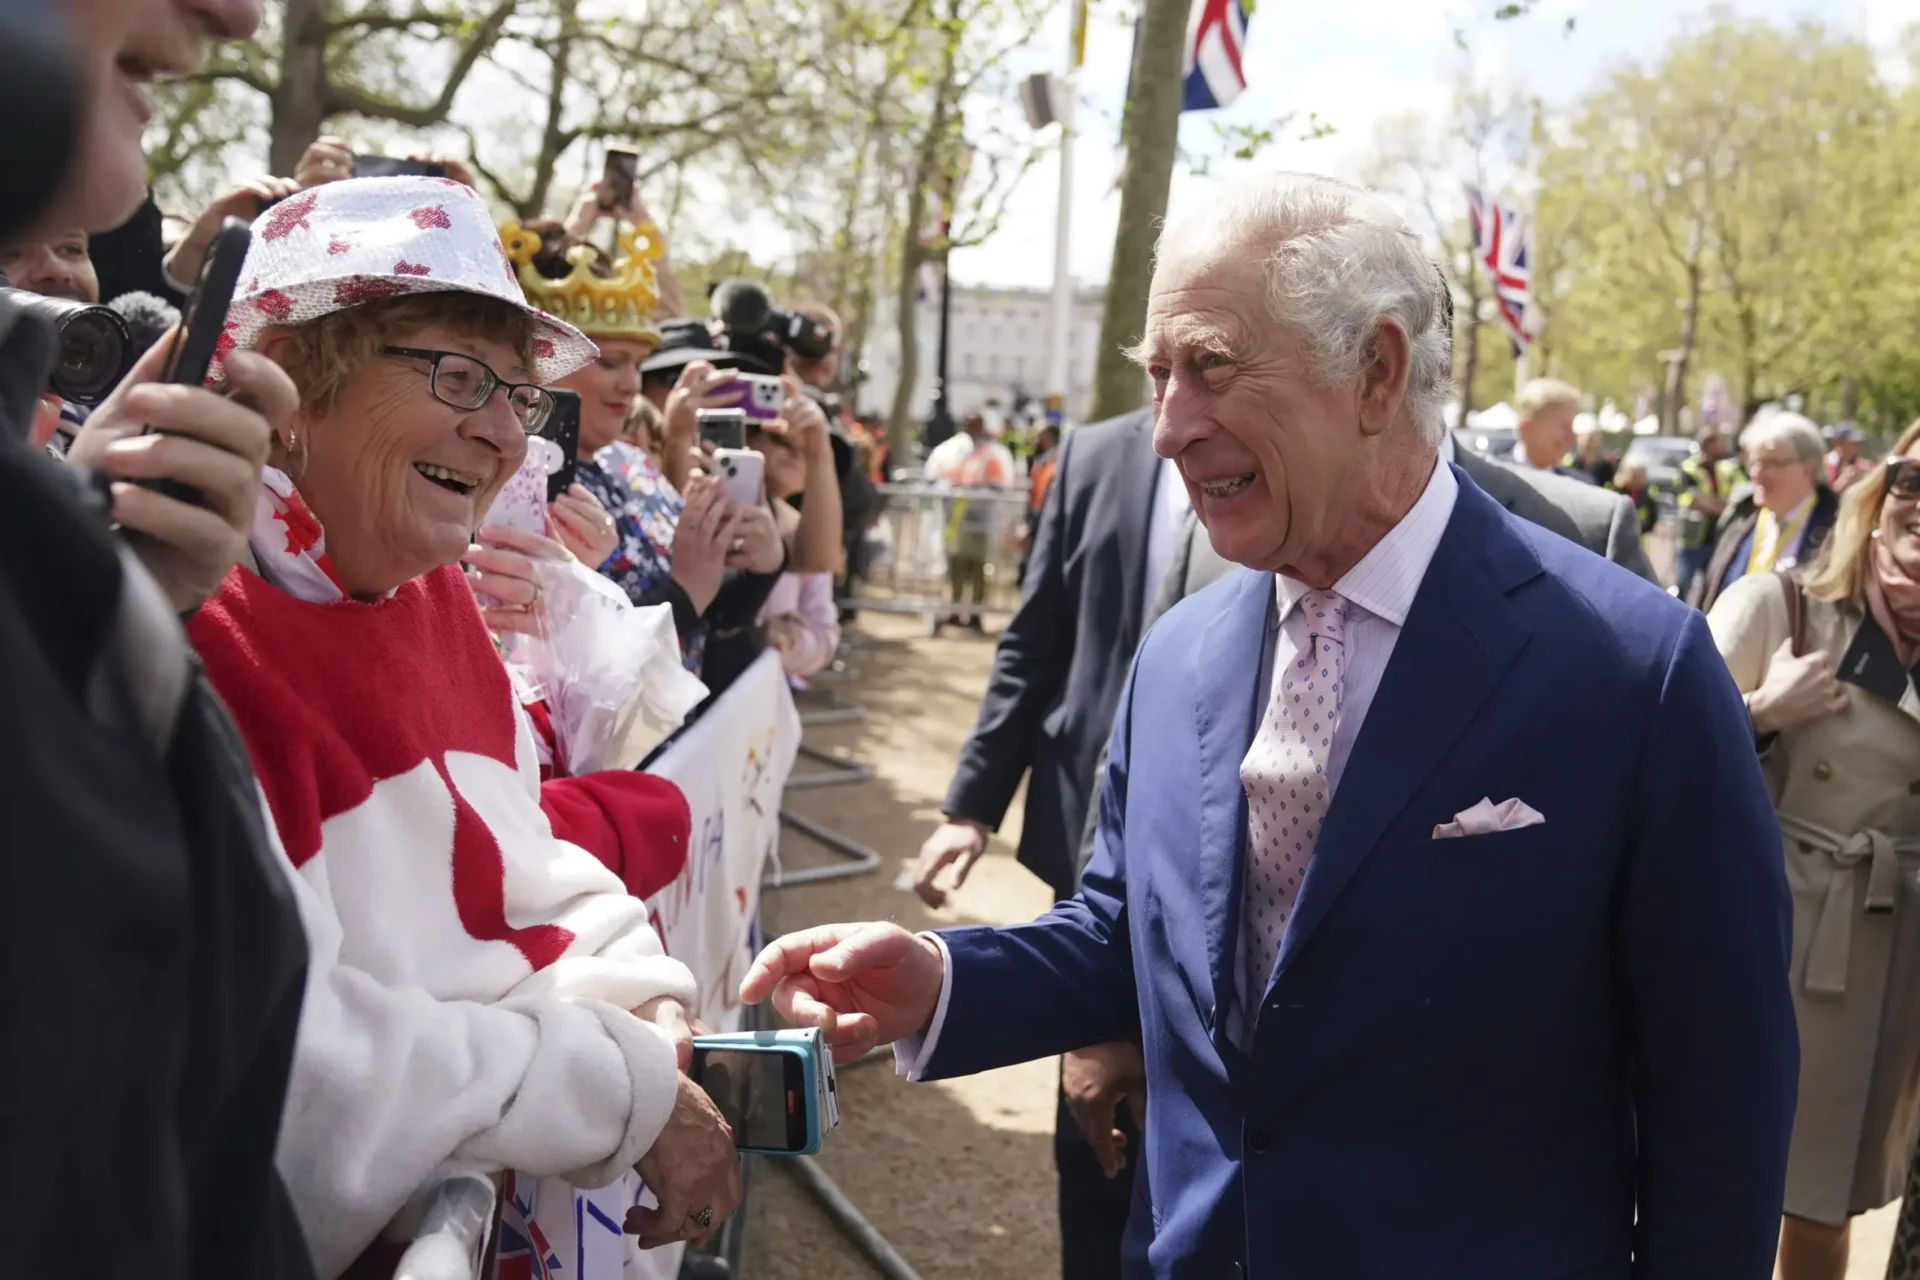 El Rey Carlos III sorprende a la multitud fuera del Palacio de Buckingham